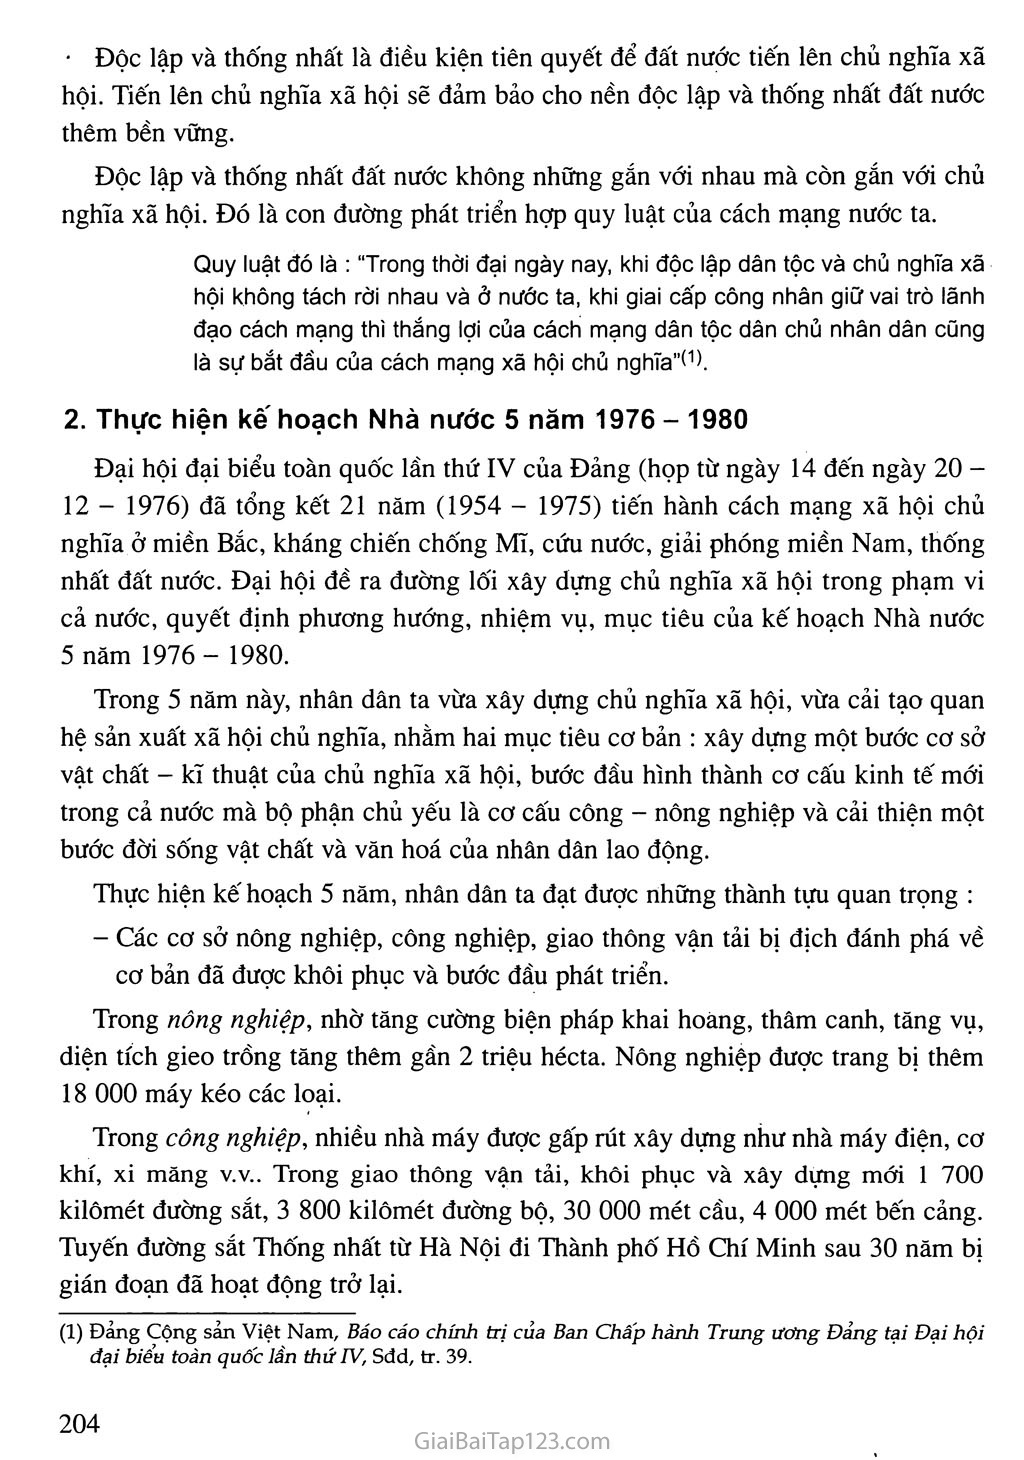 Bài 25. Việt Nam xây dựng chủ nghĩa xã hội và đấu tranh bảo vệ Tổ quốc (1976 - 1986) trang 2